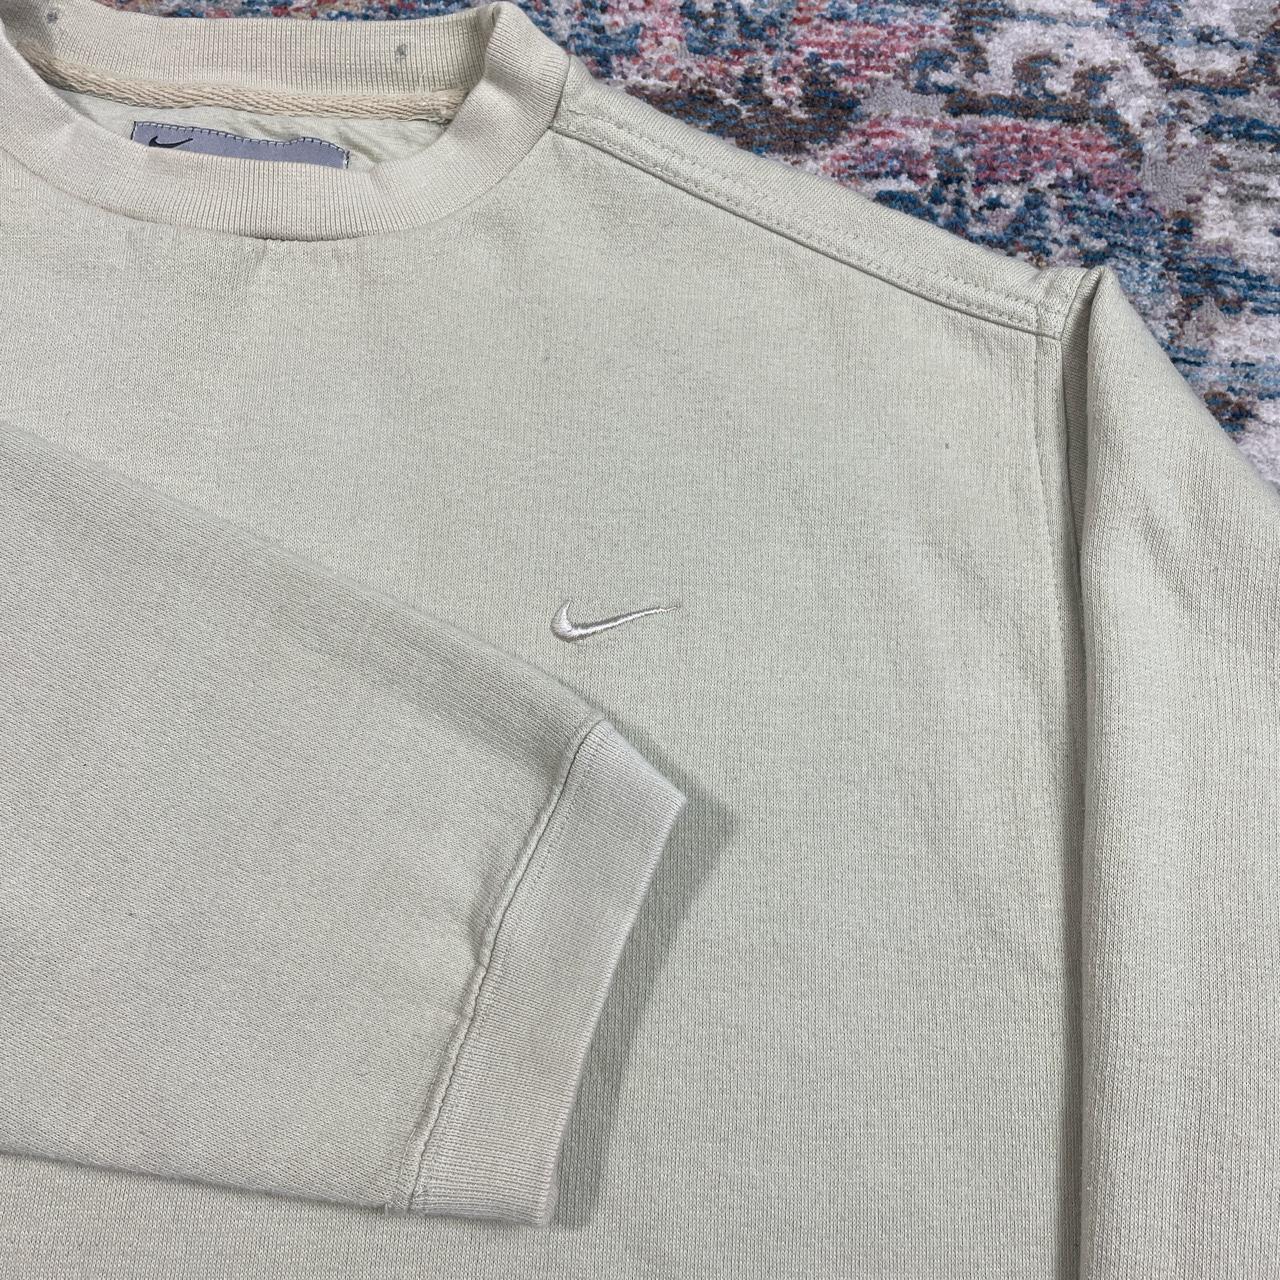 Vintage Nike Beige Swoosh Sweatshirt